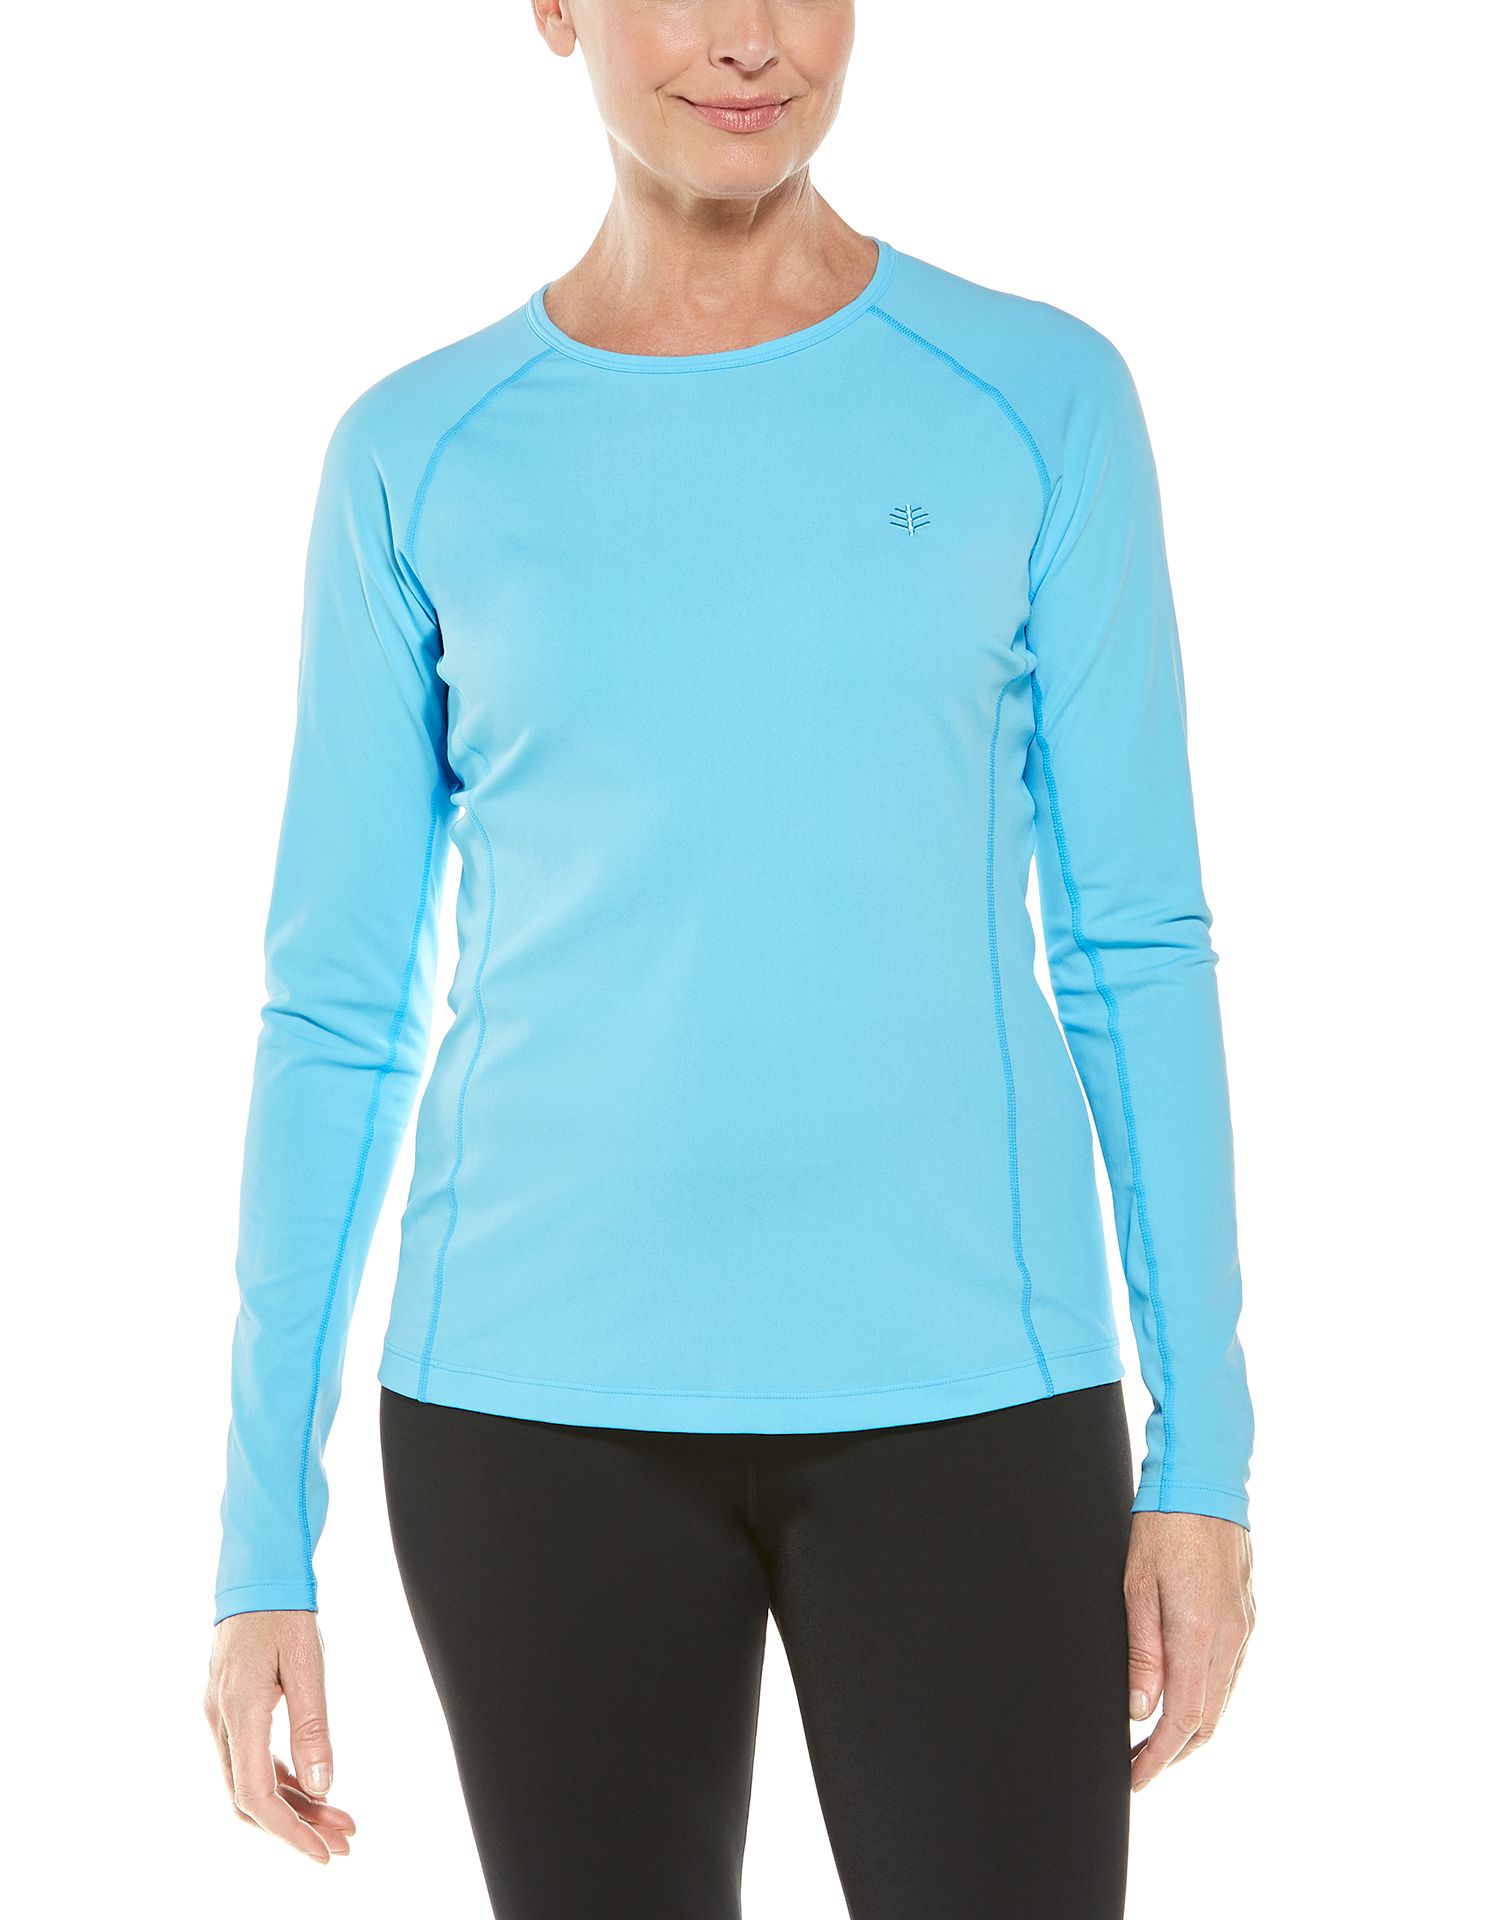 Coolibar - UV Zwemshirt voor dames - Longsleeve - Hightide - Ijsblauw